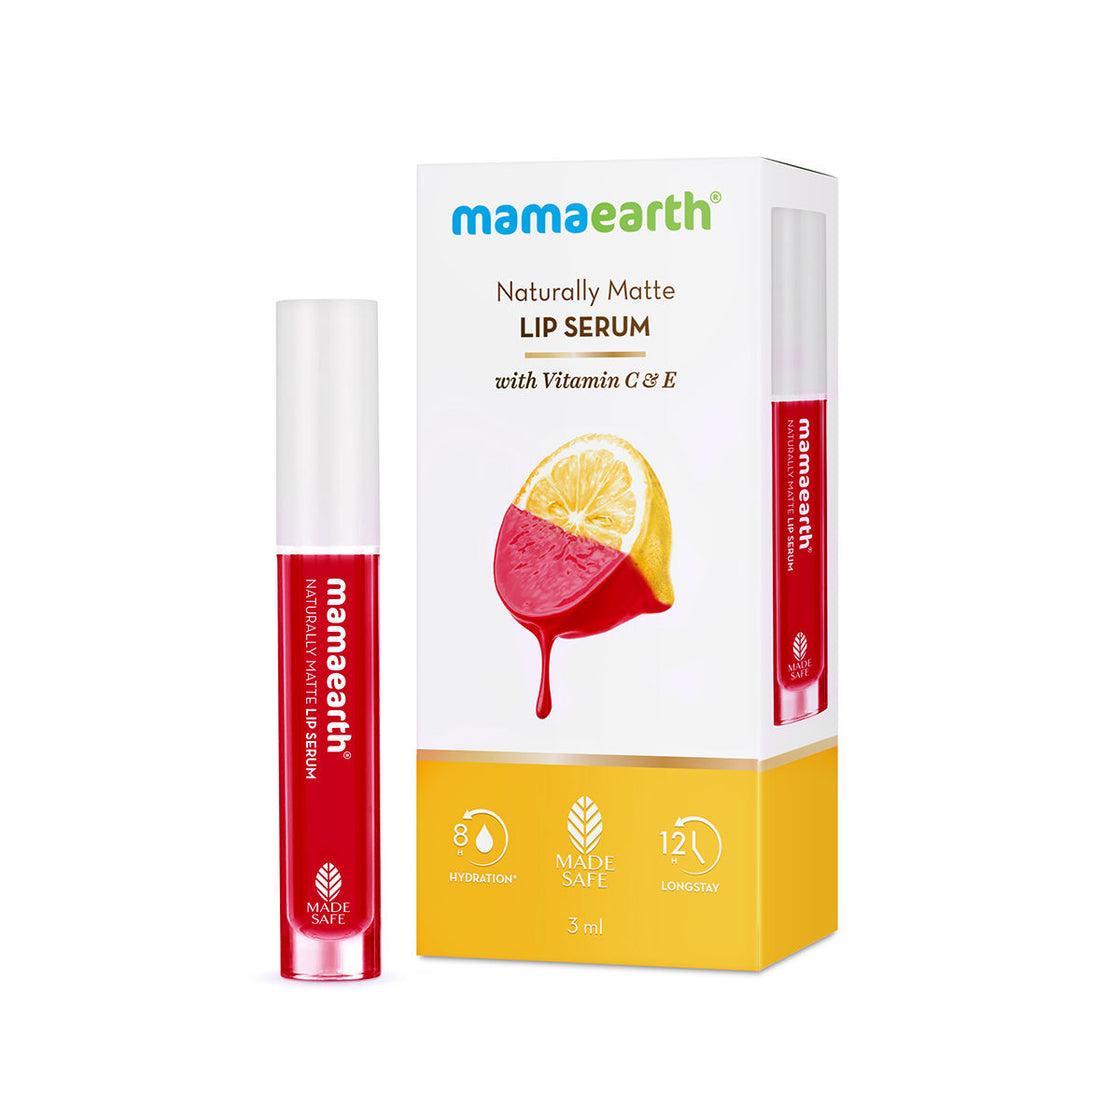 Mamaearth Naturally Matte Lip Serum - Matte Liquid Lipstick With Vitamin C & E-2